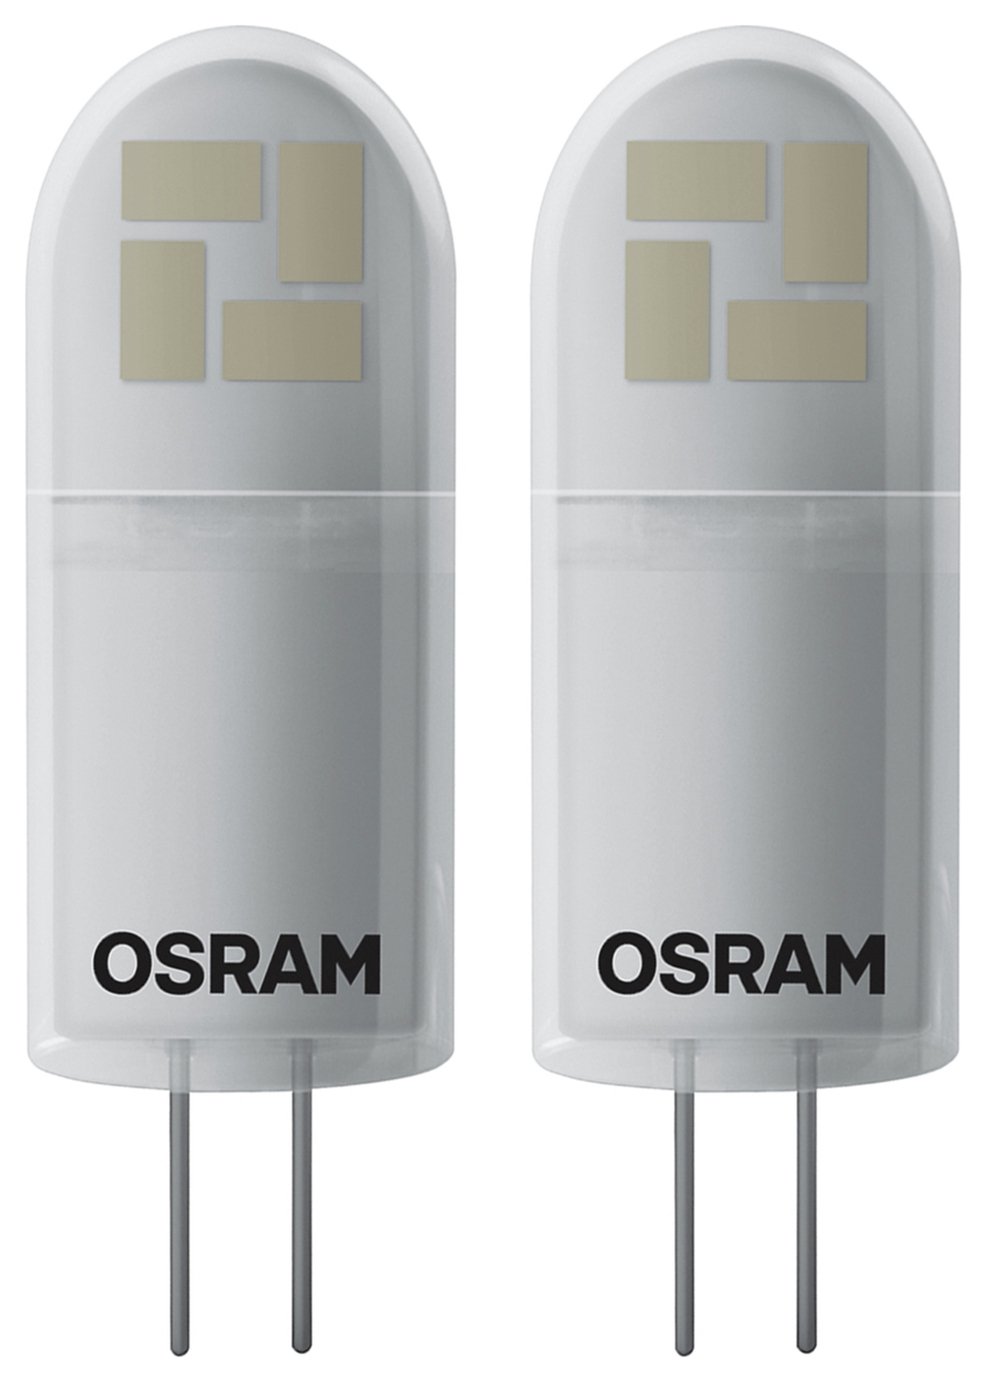 Osram 12v светодиодная. Osram g4 12v led. Лампочки светодиодные Osram g4. Лампа g4 12v светодиодная Osram. Светодиодная лампа g4 12v 7w.